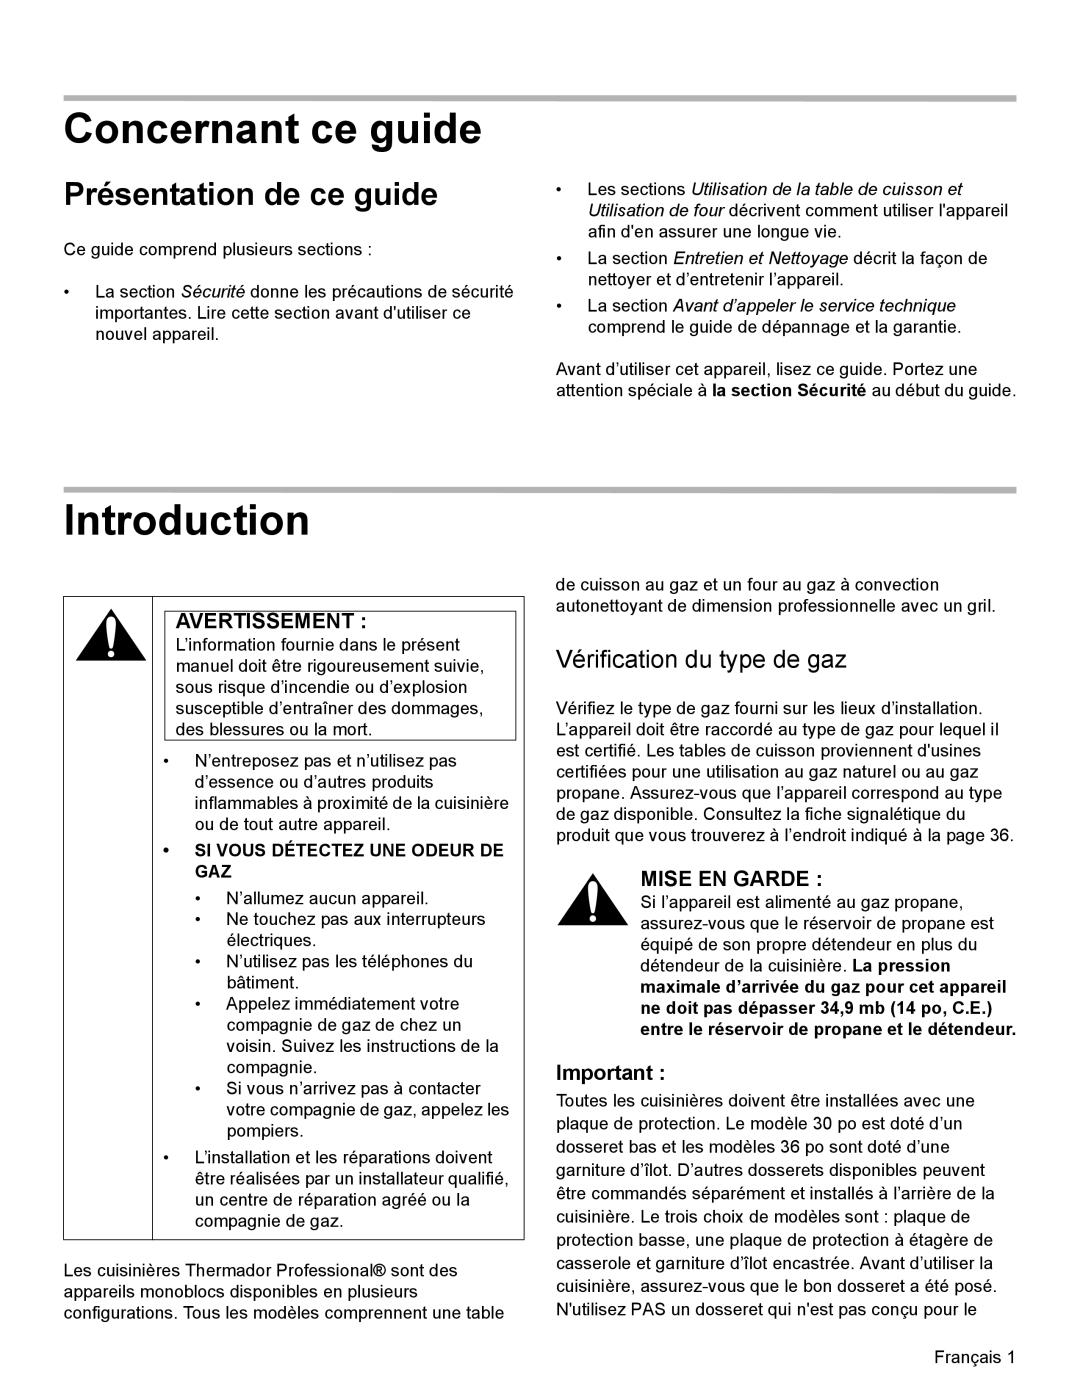 Thermador PRL36, PRG30, PRL30 manual Concernant ce guide, Présentation de ce guide, Vérification du type de gaz, Introduction 